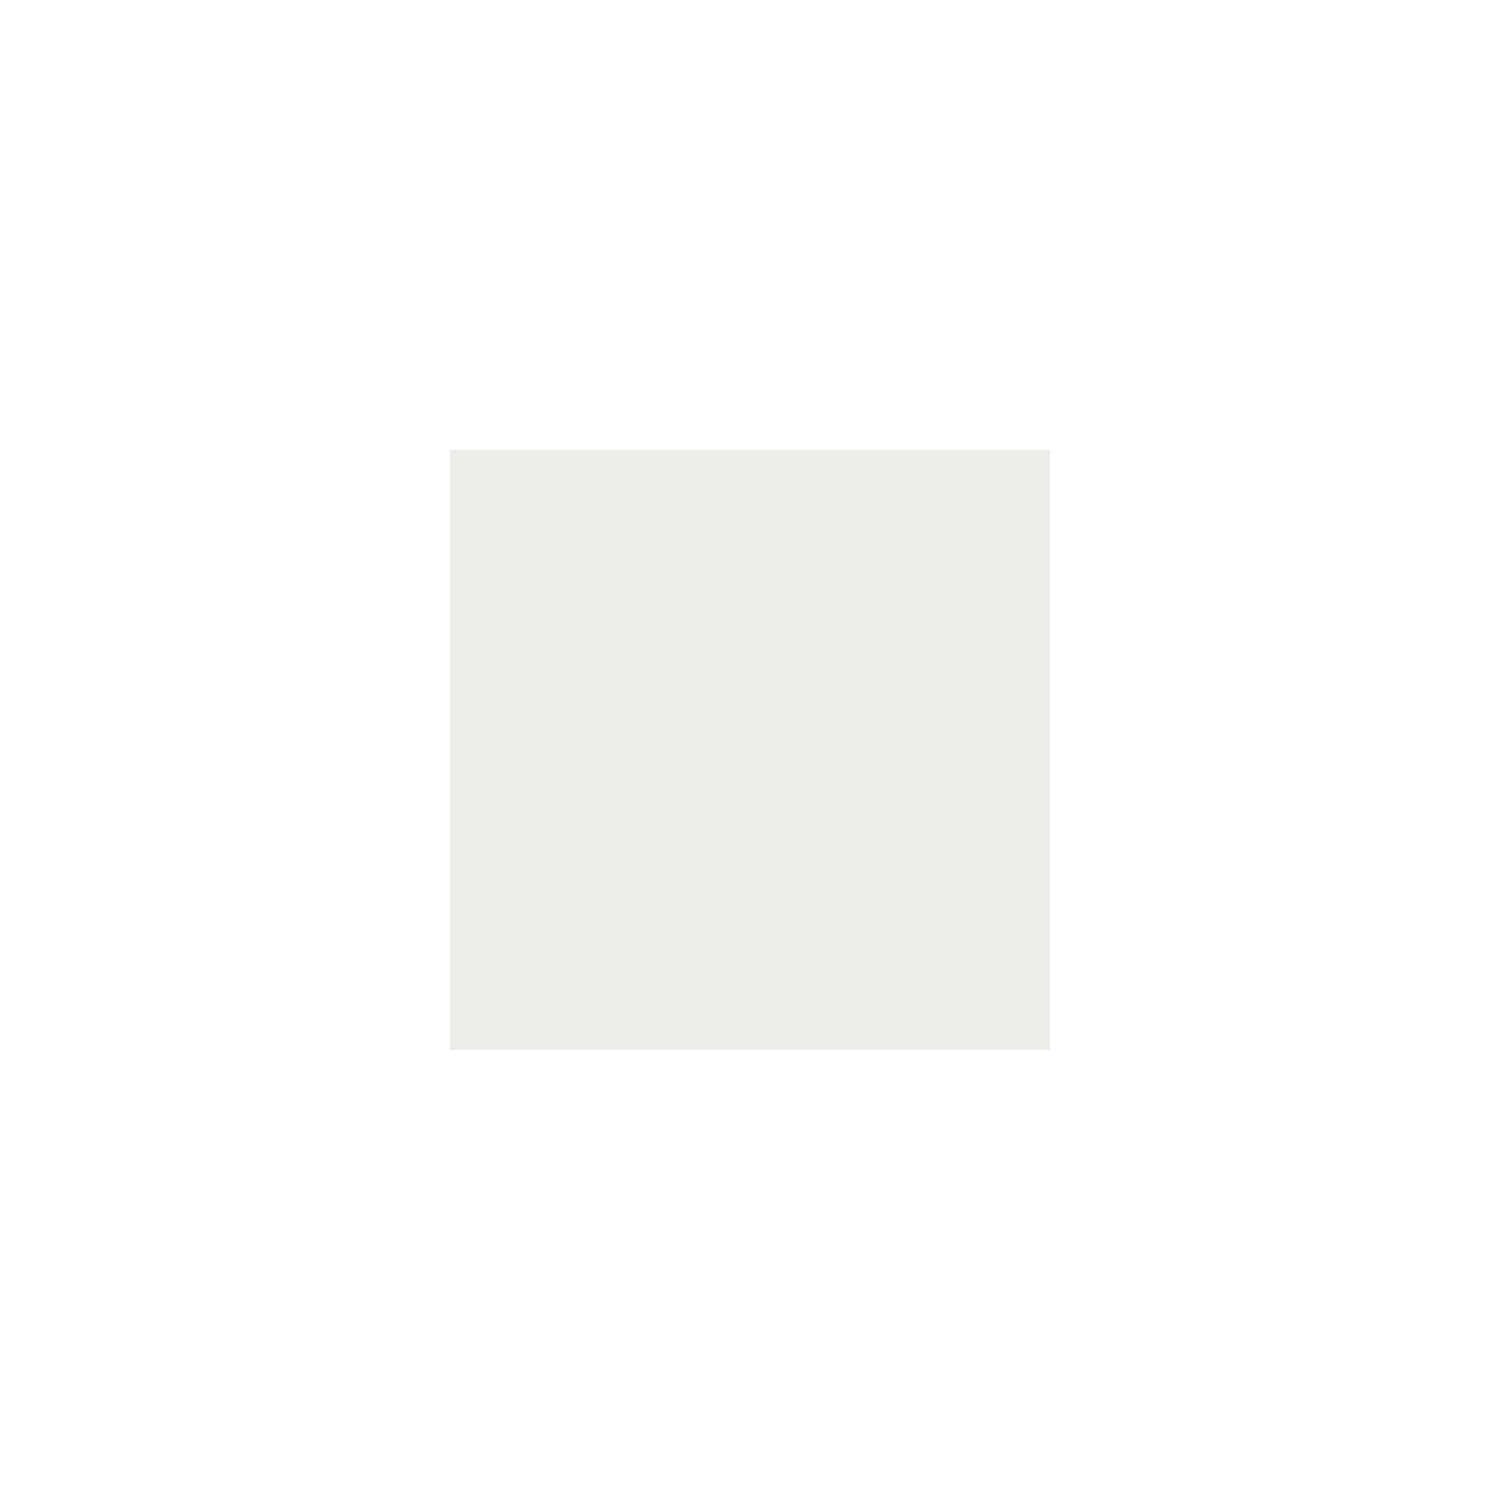 Itamoby Consolle allungabile 90x40/196 cm Diago Small Cemento telaio Bianco